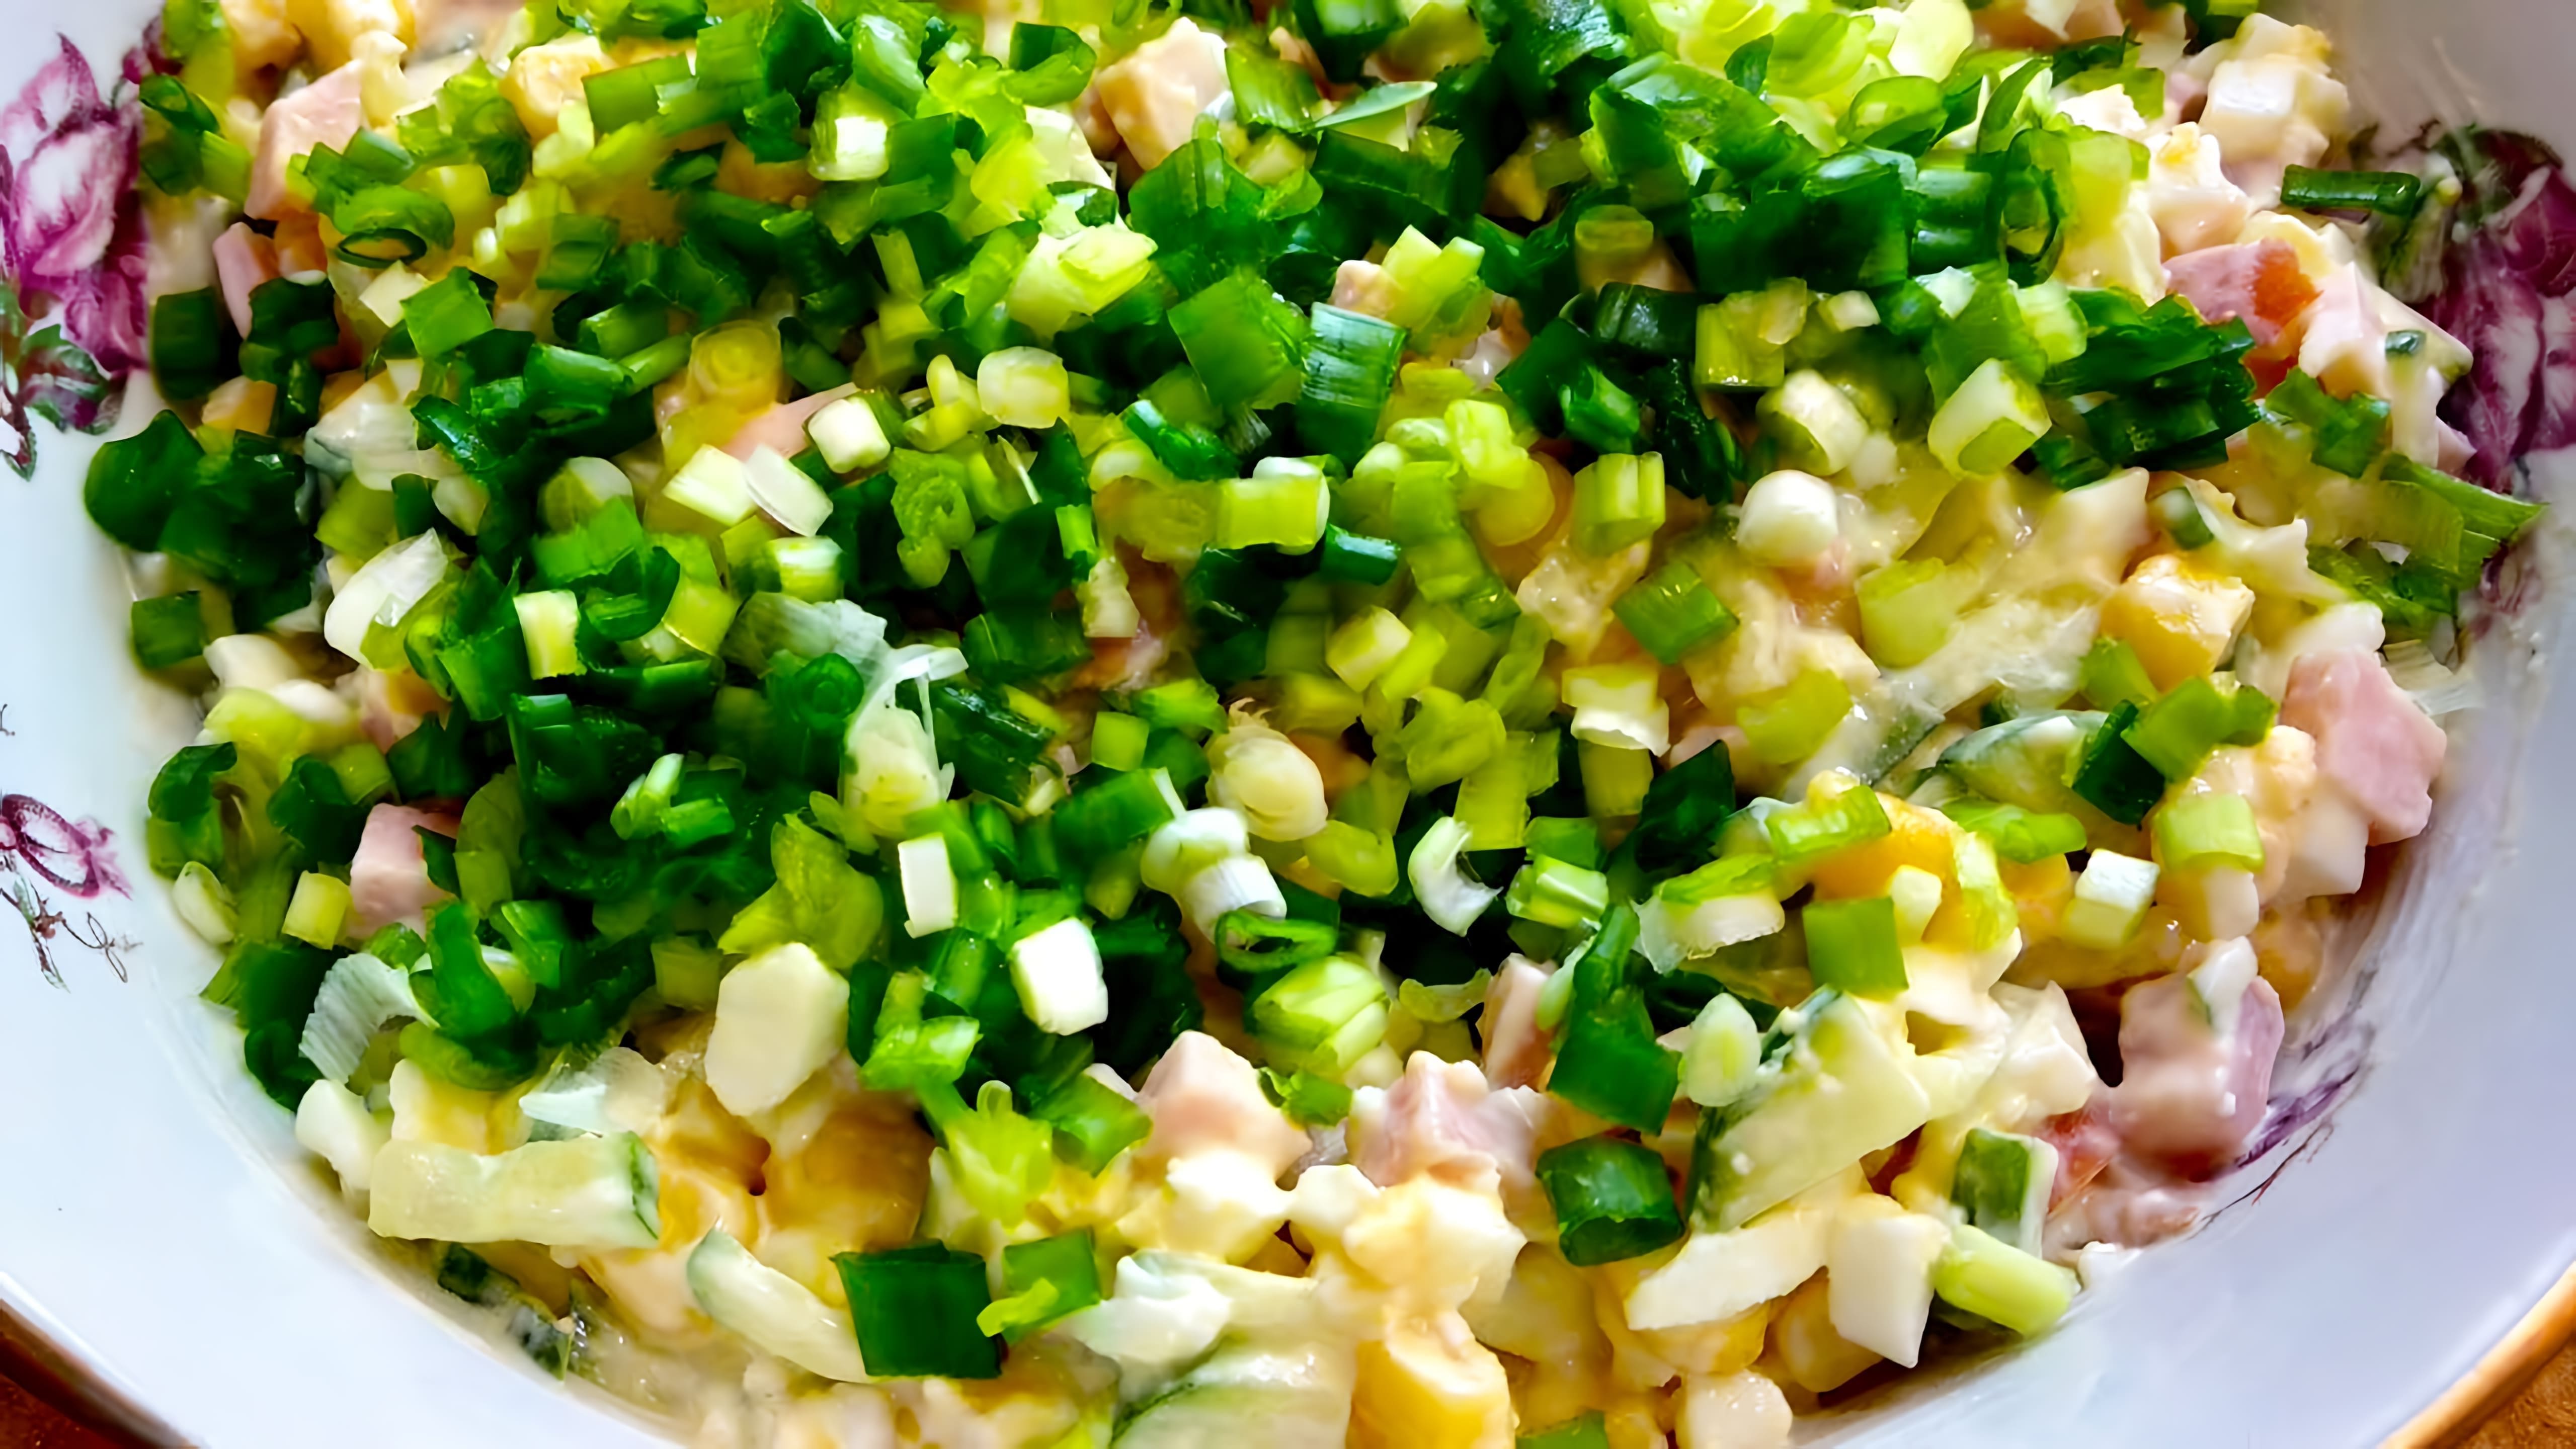 Легкий и сытный салат из ветчины, кукурузы и огурца - это быстрый и простой рецепт, который можно приготовить за несколько минут